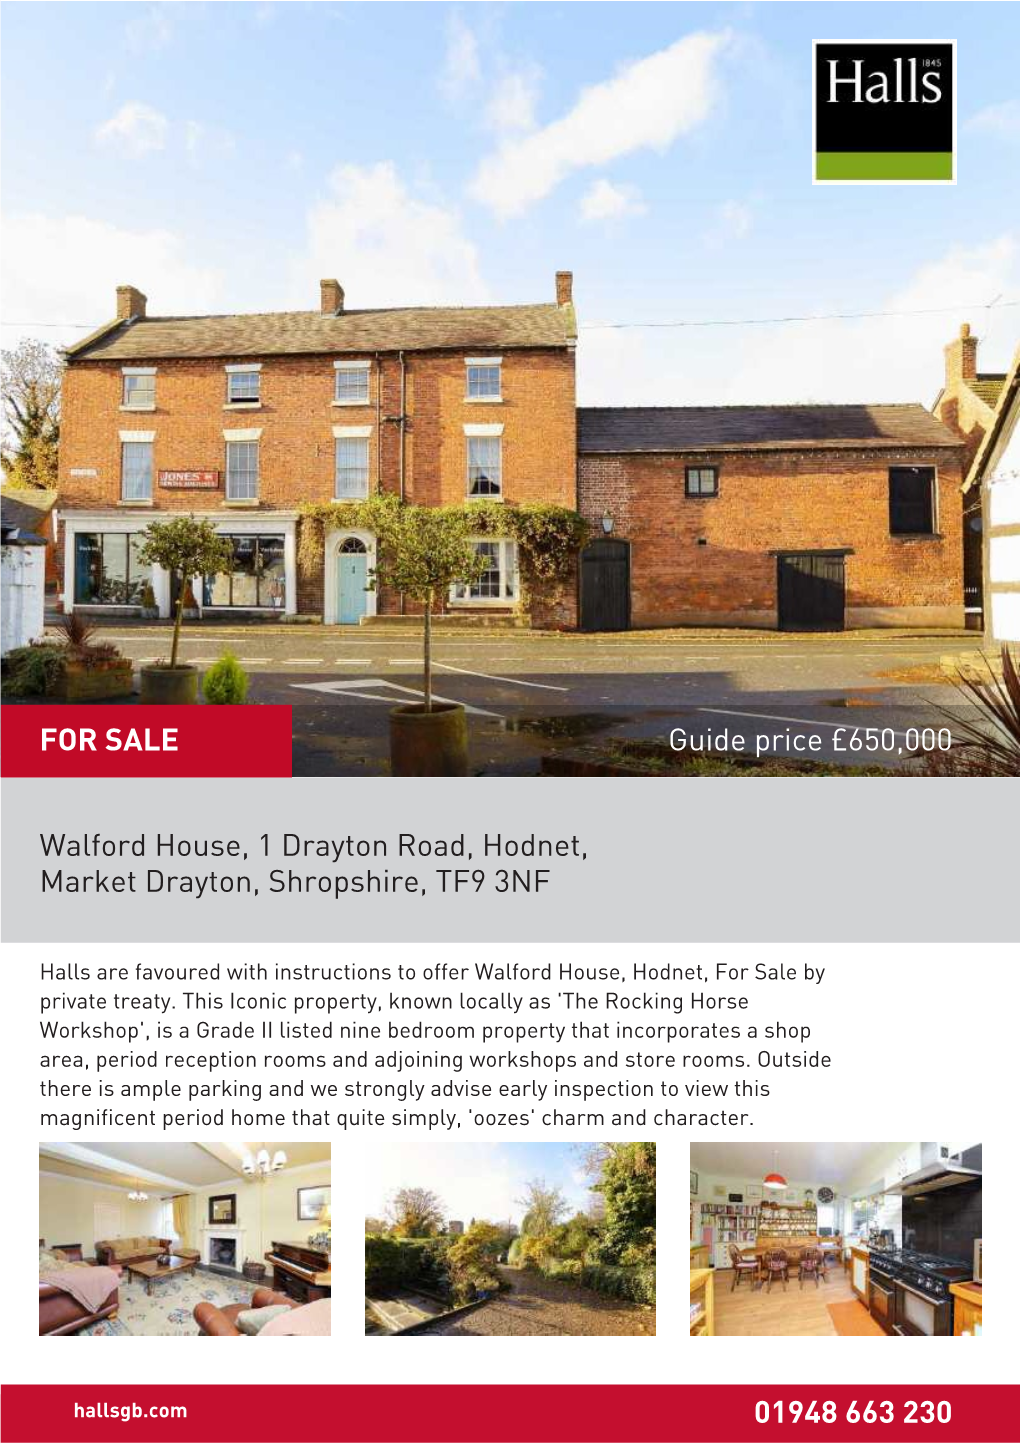 Walford House, 1 Drayton Road, Hodnet, Market Drayton, Shropshire, TF9 3NF